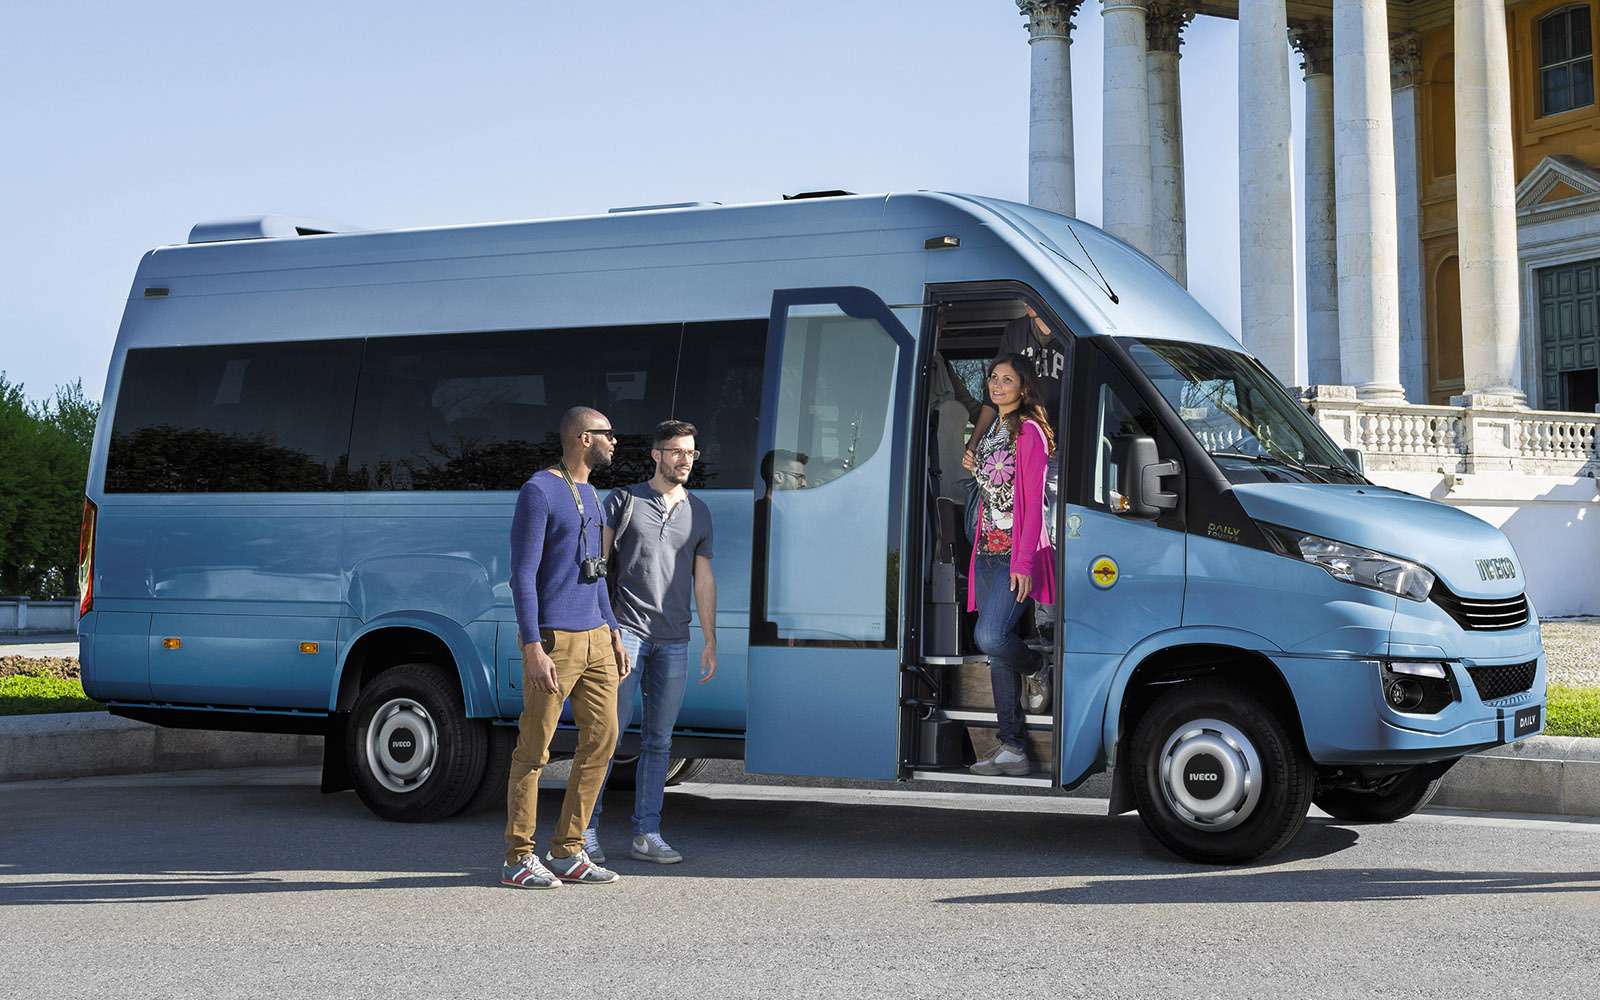 Микроавтобусы Iveco Daily, служащие теперь маршрутками в столице, очень хороши